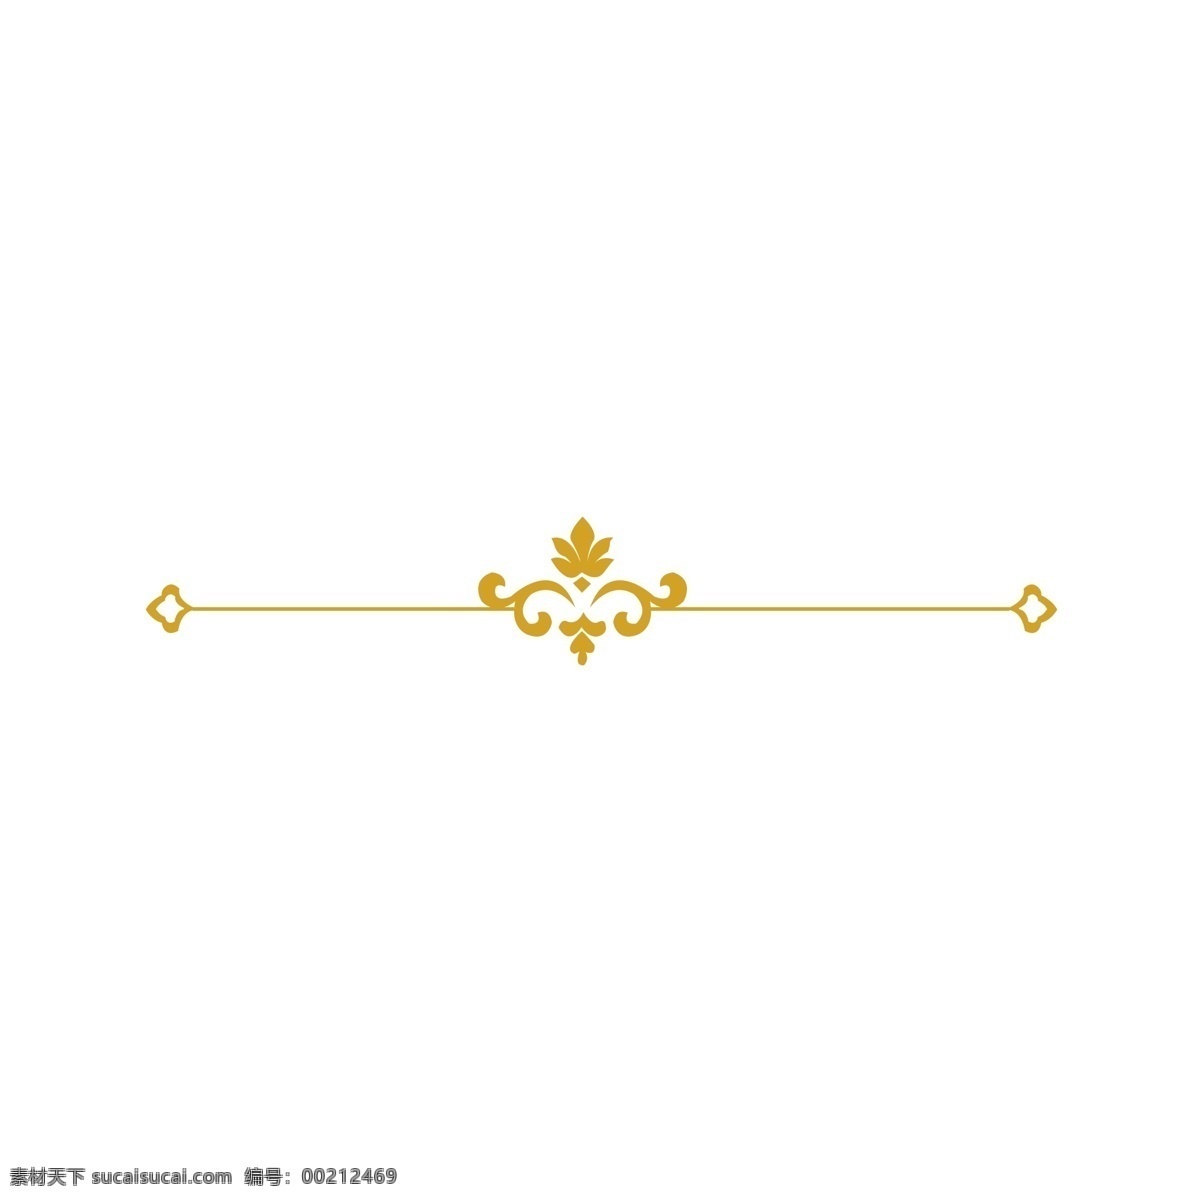 欧式 复古 花纹 金色 装饰 纹理 欧式纹路 黄色 金色花纹 传统 边框 古典 简约 花纹纹理